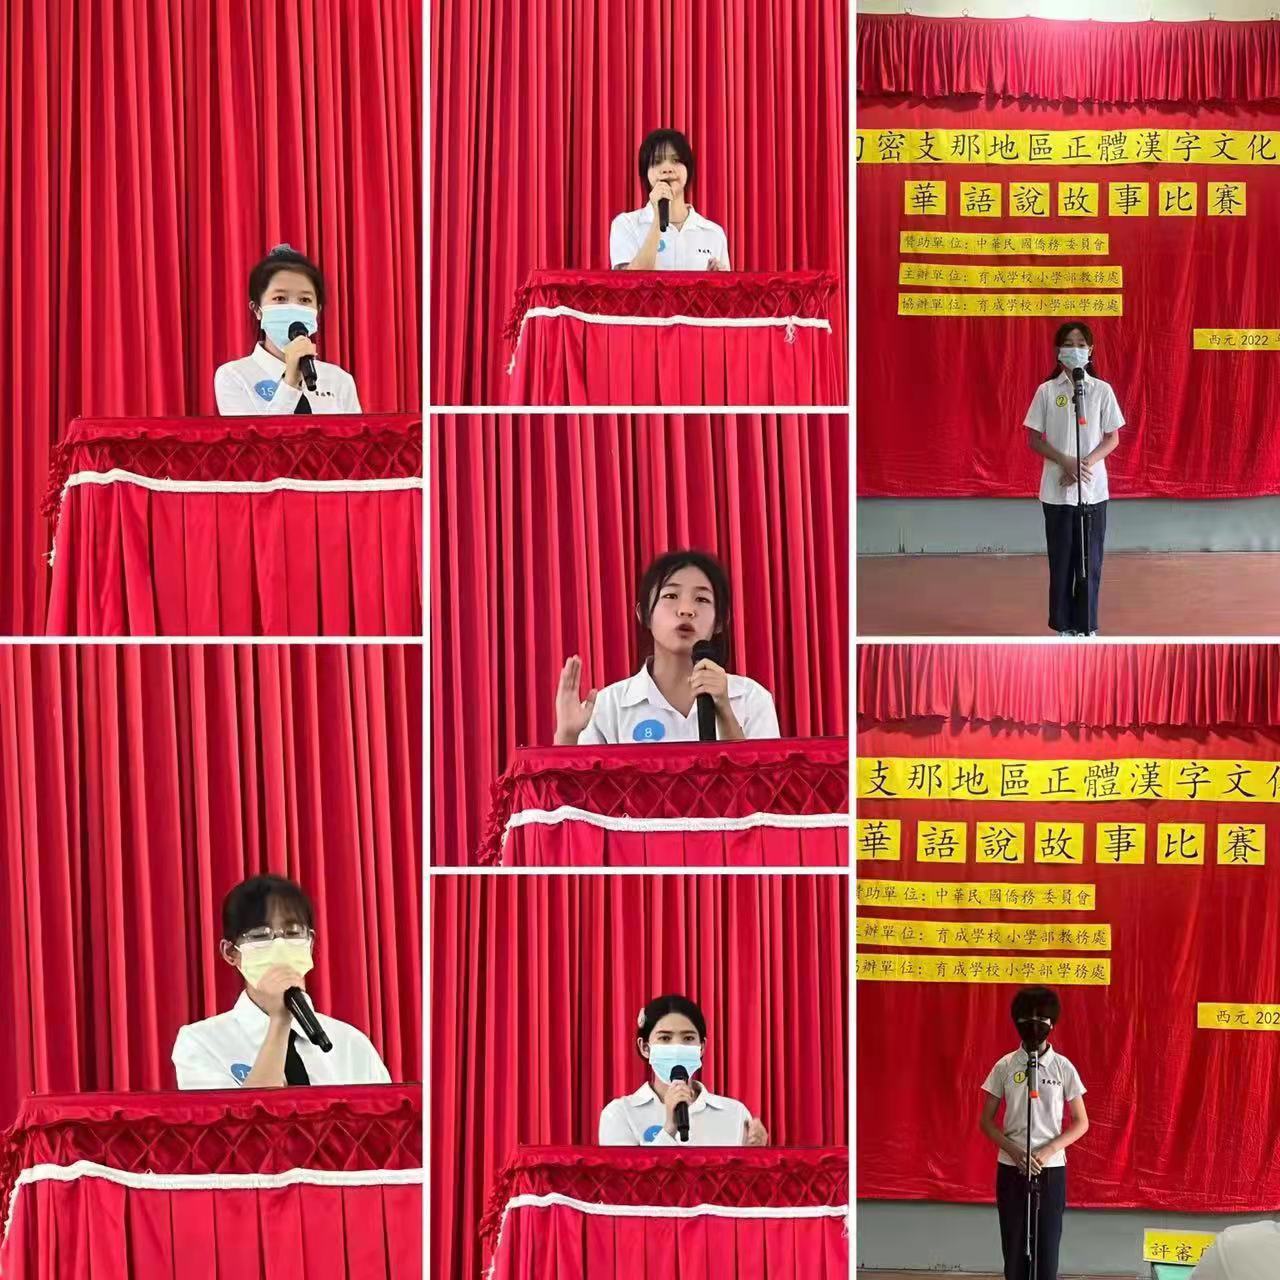 密支那育成學校2022年華語演講說故事比賽，選手在臺上充分自信地展現自我風采